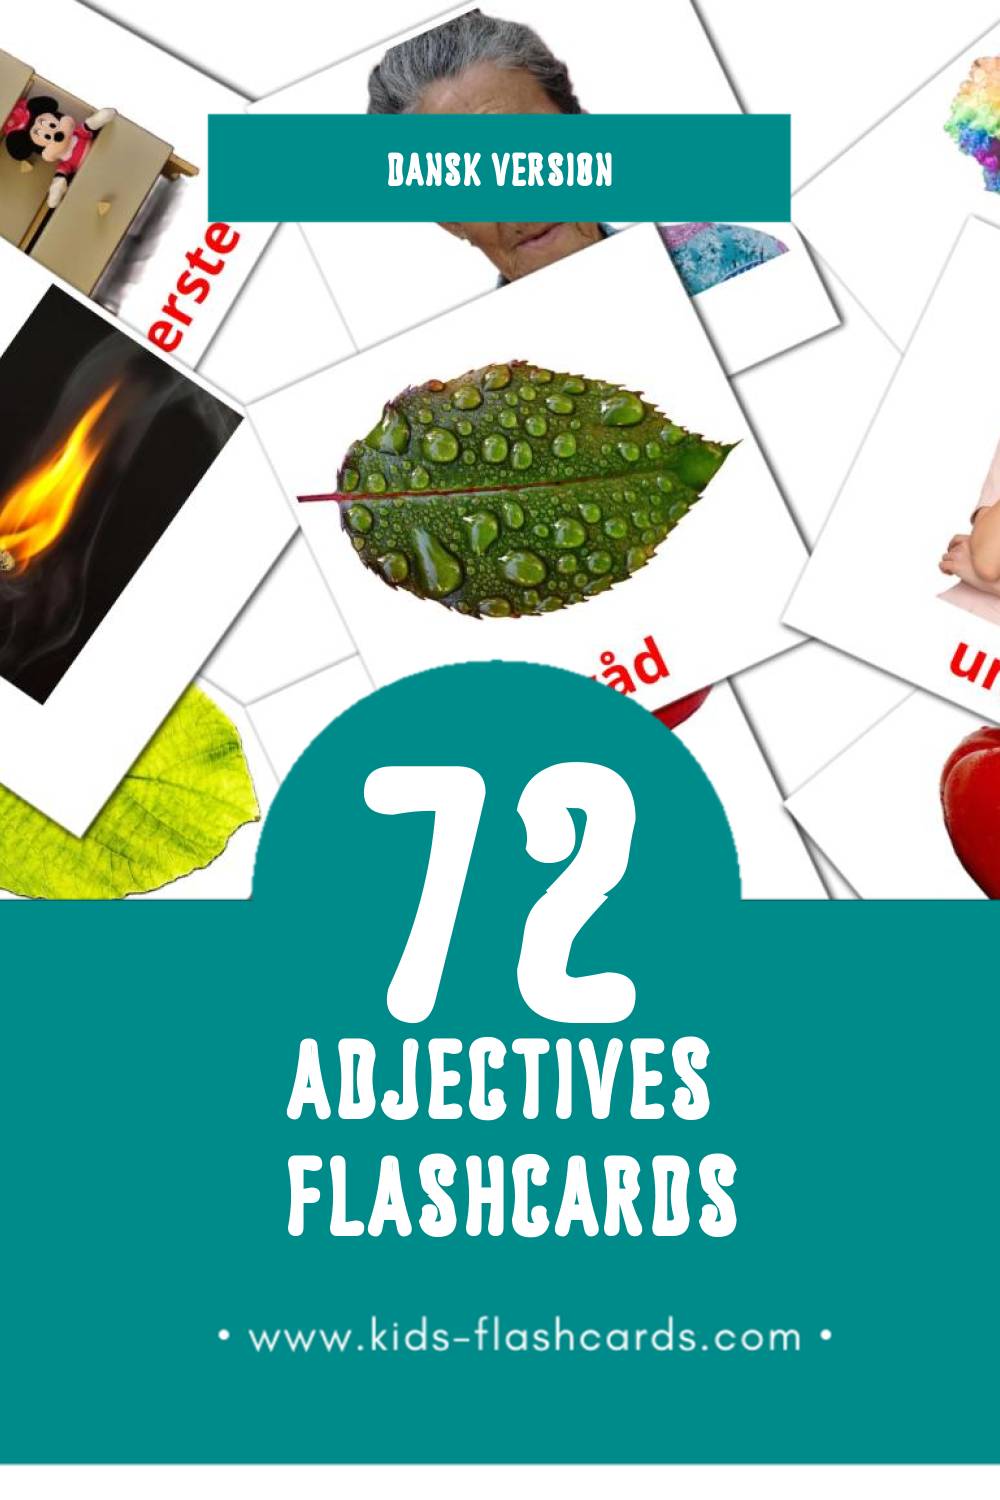 Visual Adjektiv (Tillægsord) Flashcards for Toddlers (72 cards in Dansk)